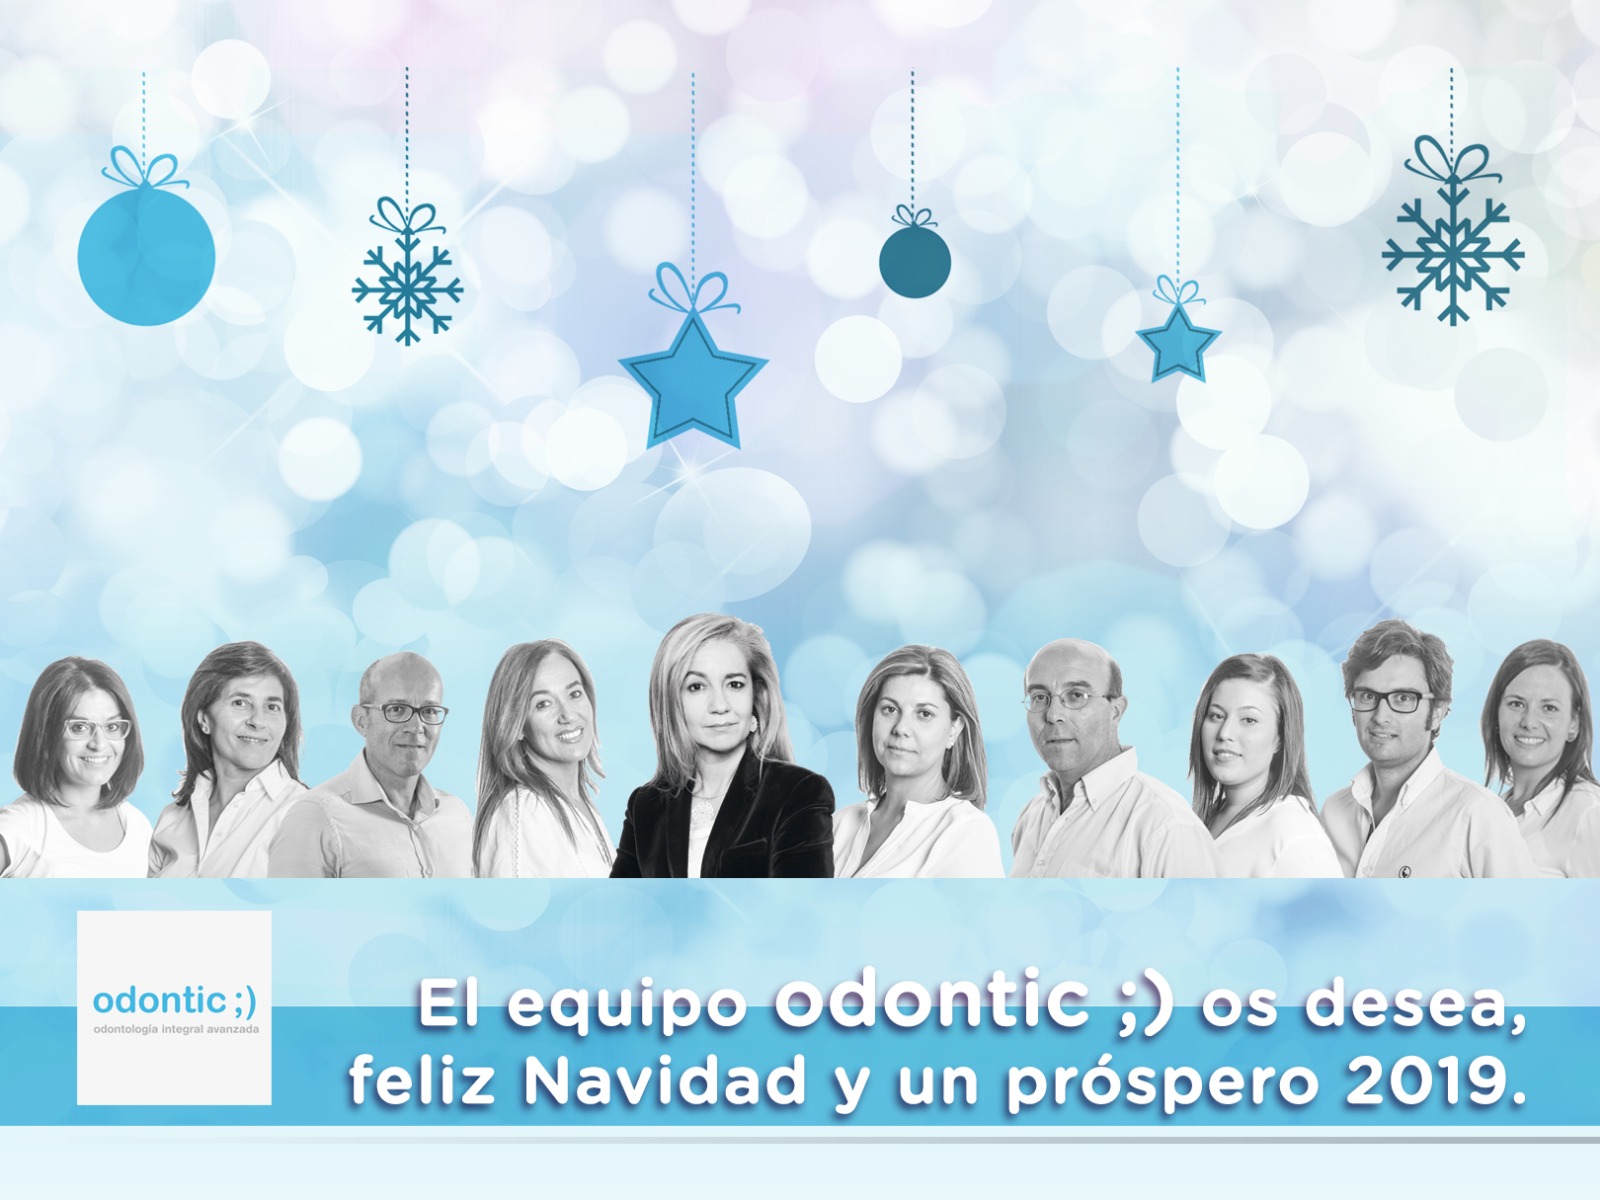 Clínica dental Odontic os desea Feliz Navidad y próspero 2019.